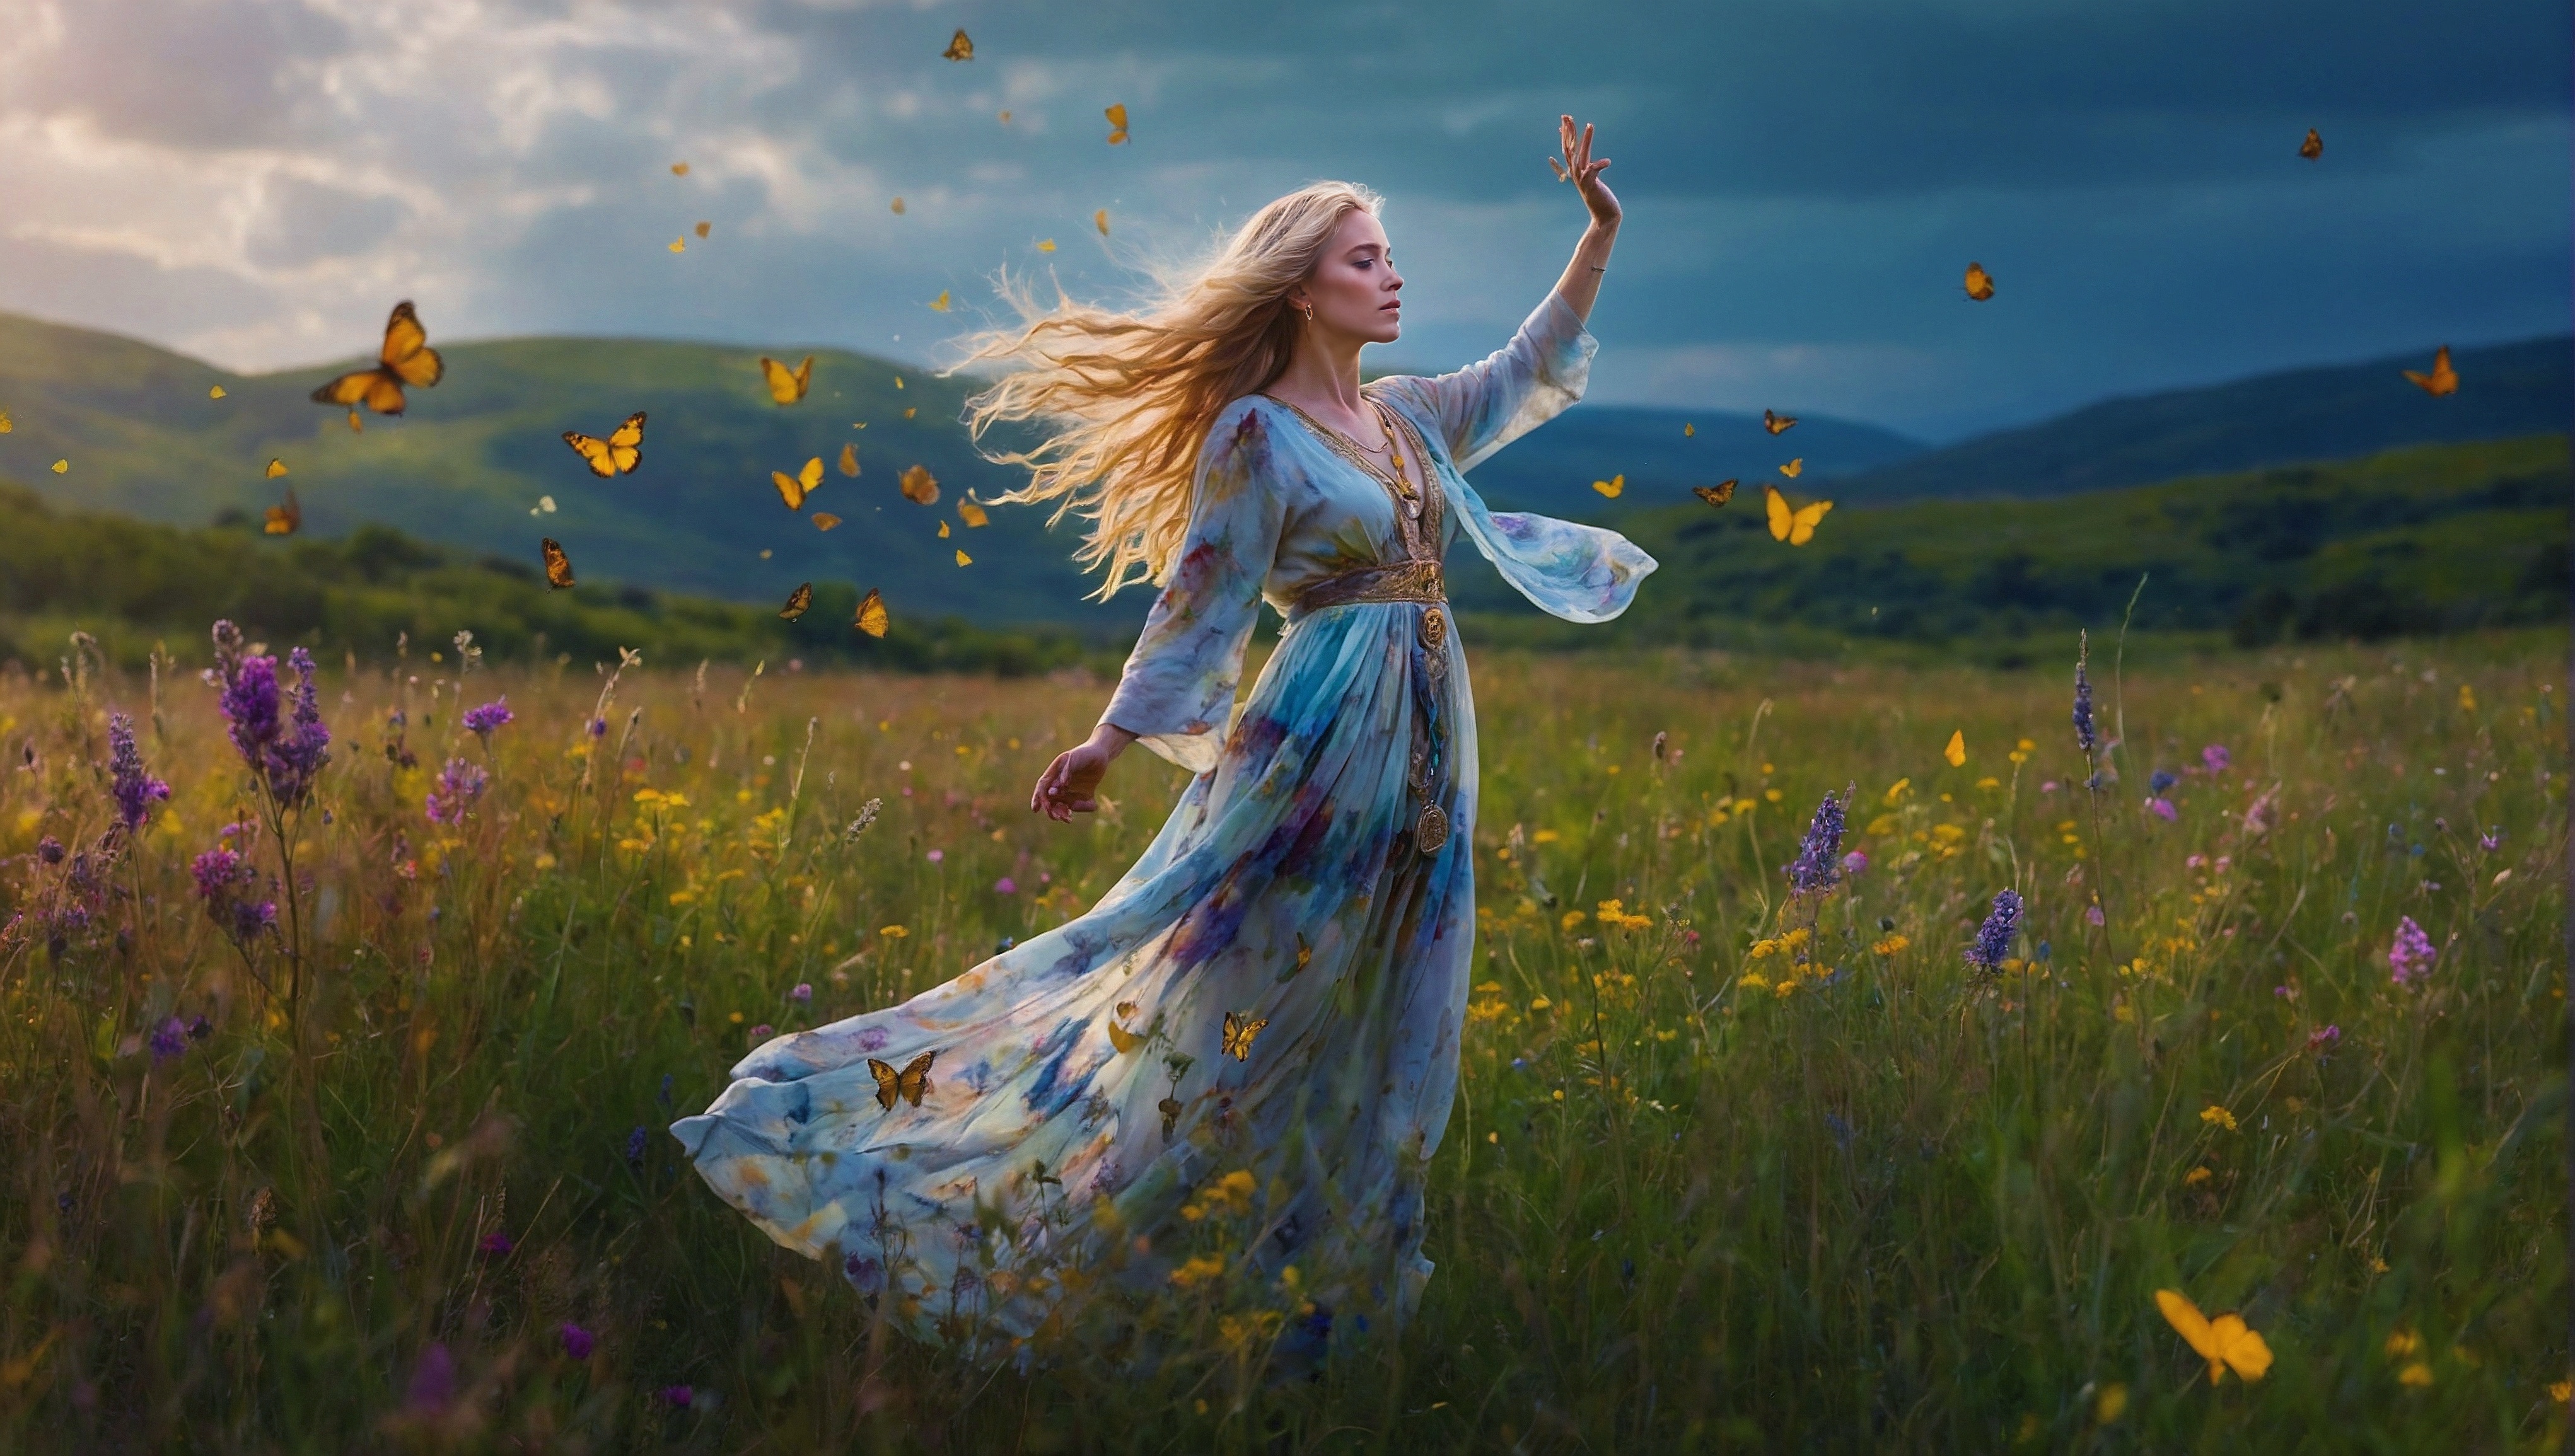 Бесплатное фото Женщина, одетая в голубое, стоит посреди поля с множеством цветов.